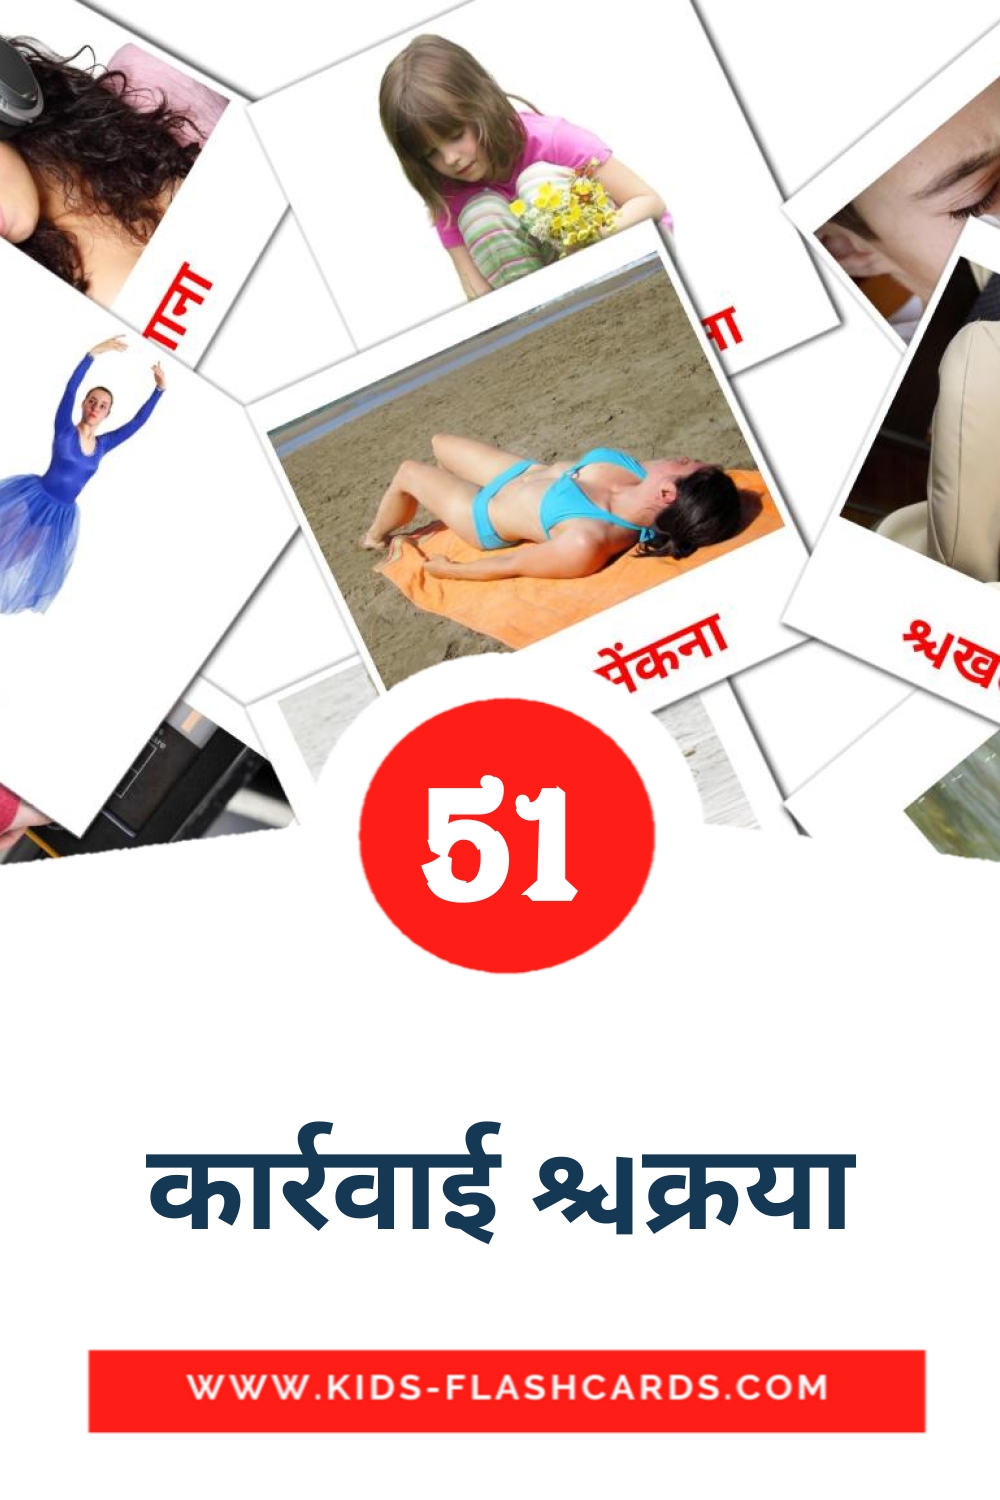 51 Cartões com Imagens de कार्रवाई क्रिया para Jardim de Infância em hindi